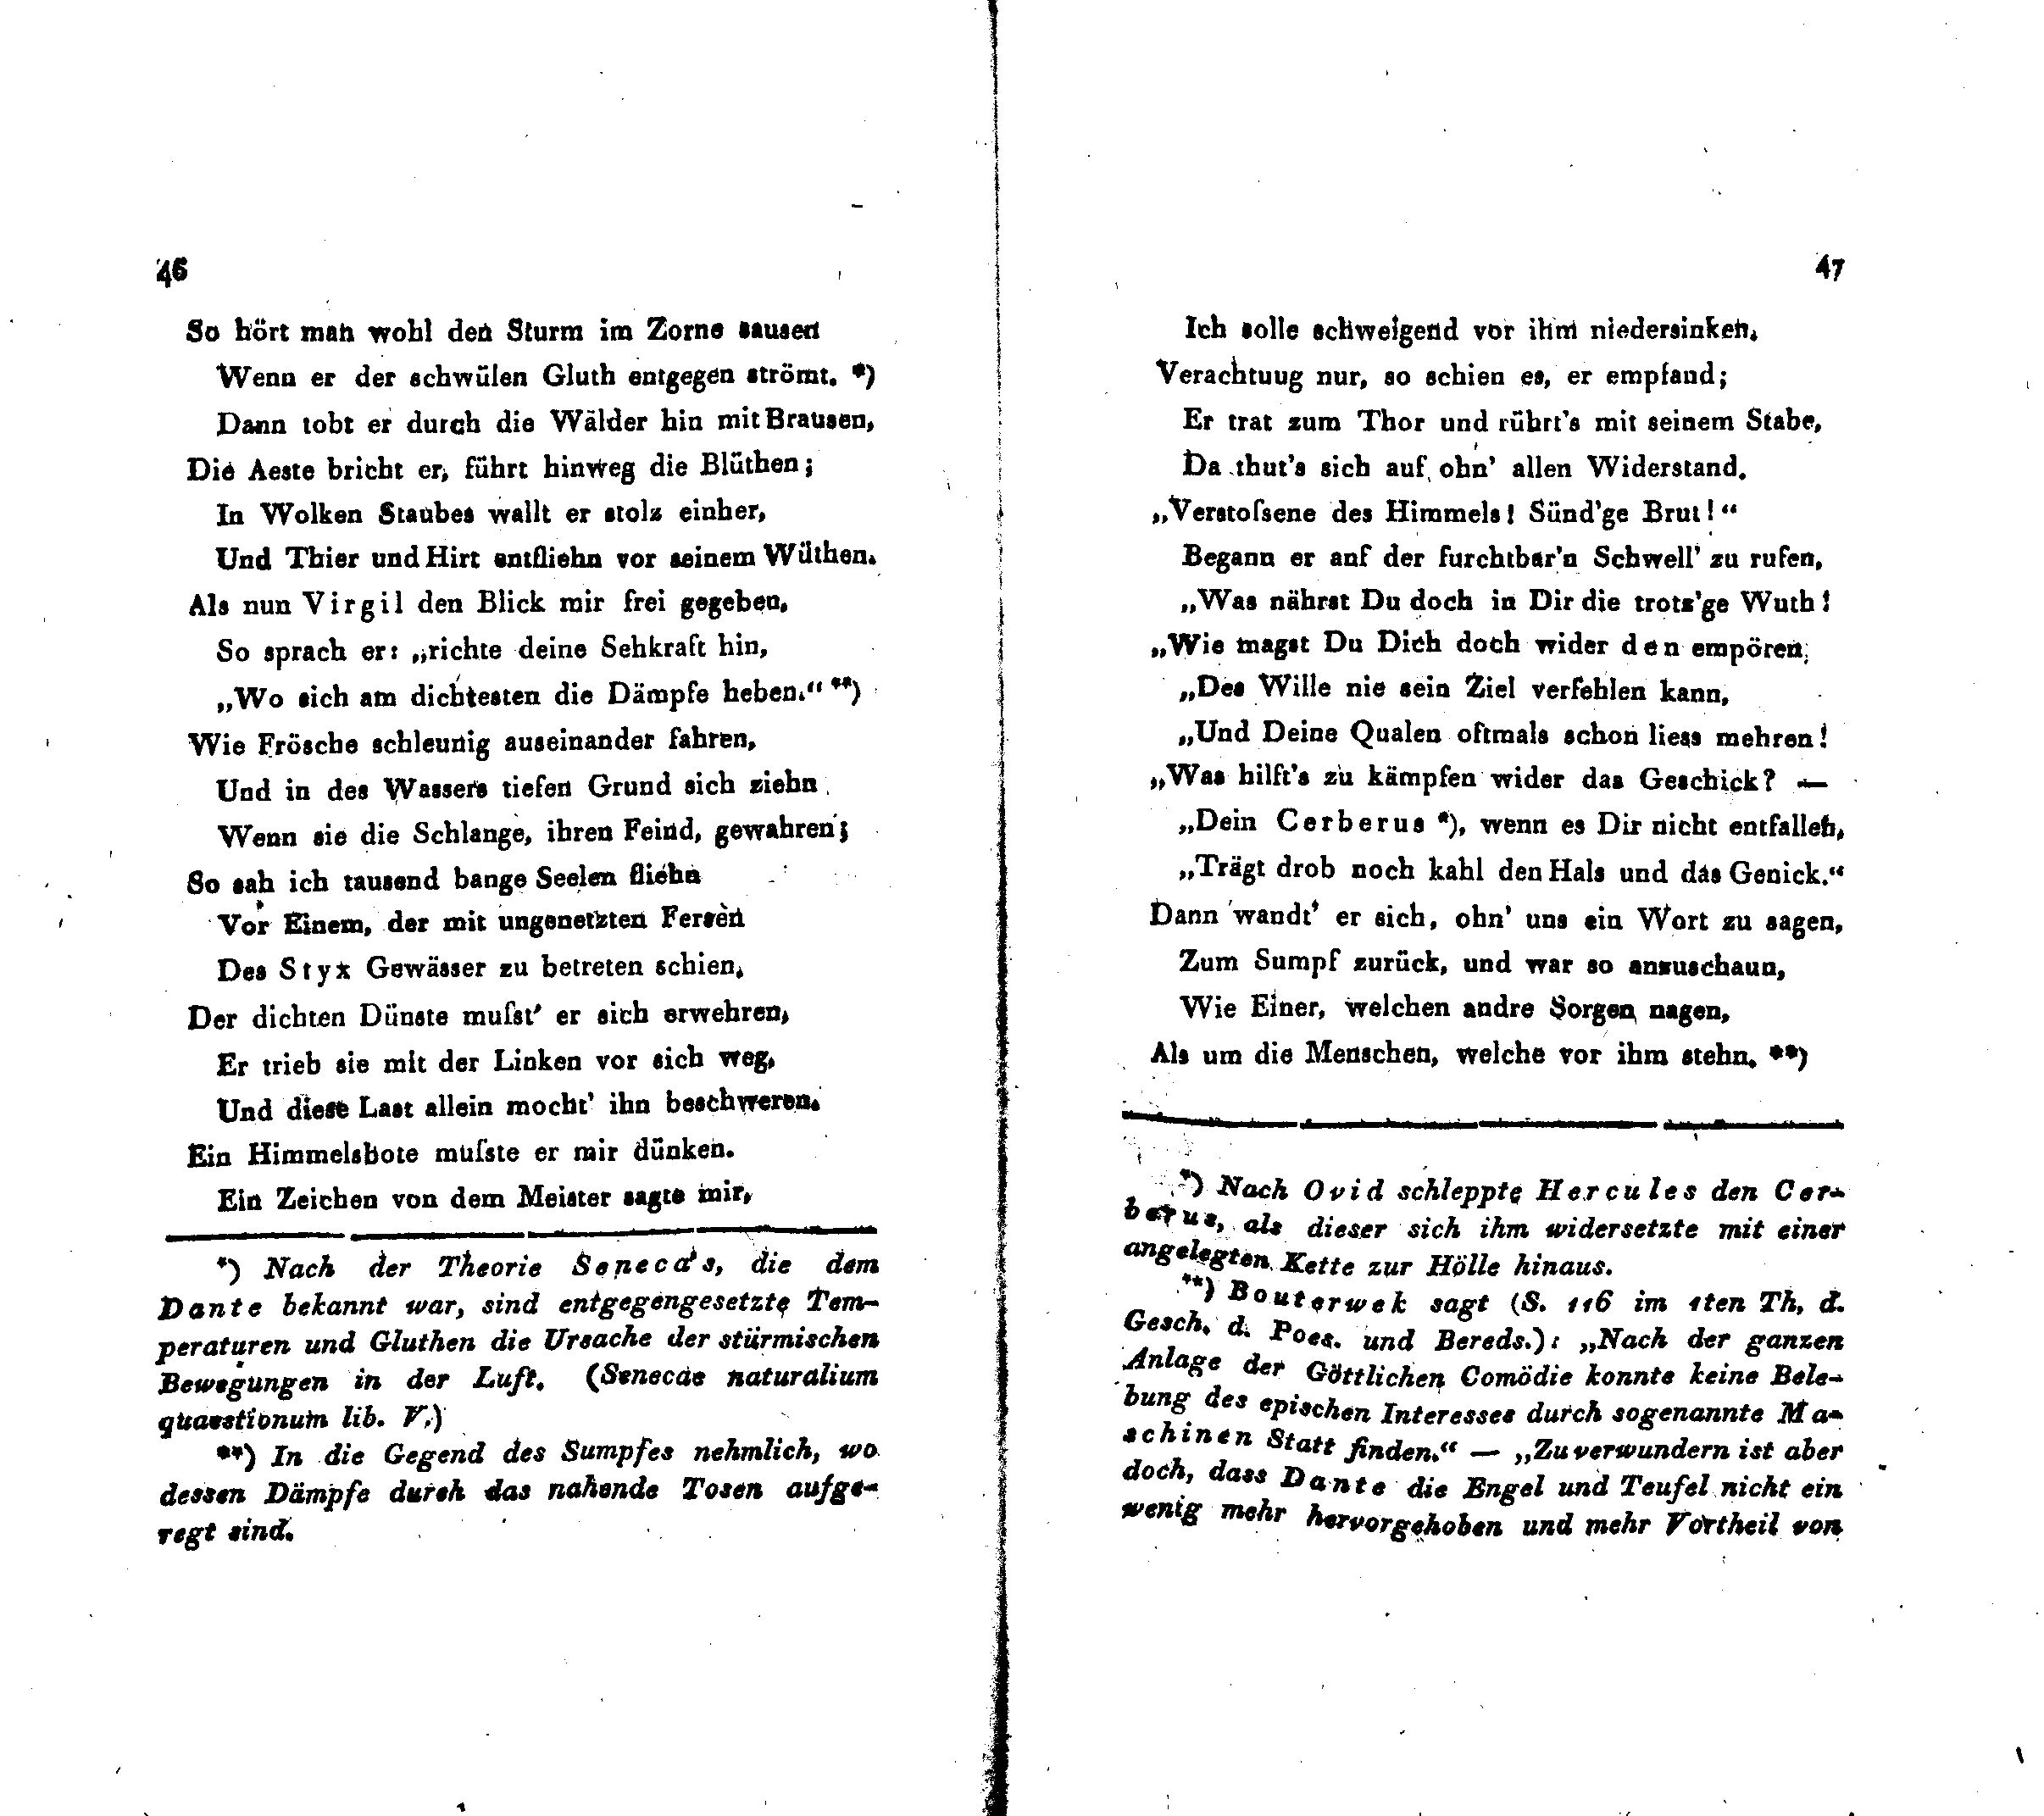 Ueber Dante Alighieri, seine Zeit und seine Divina Comedia [2] (1825) | 8. (46-47) Основной текст